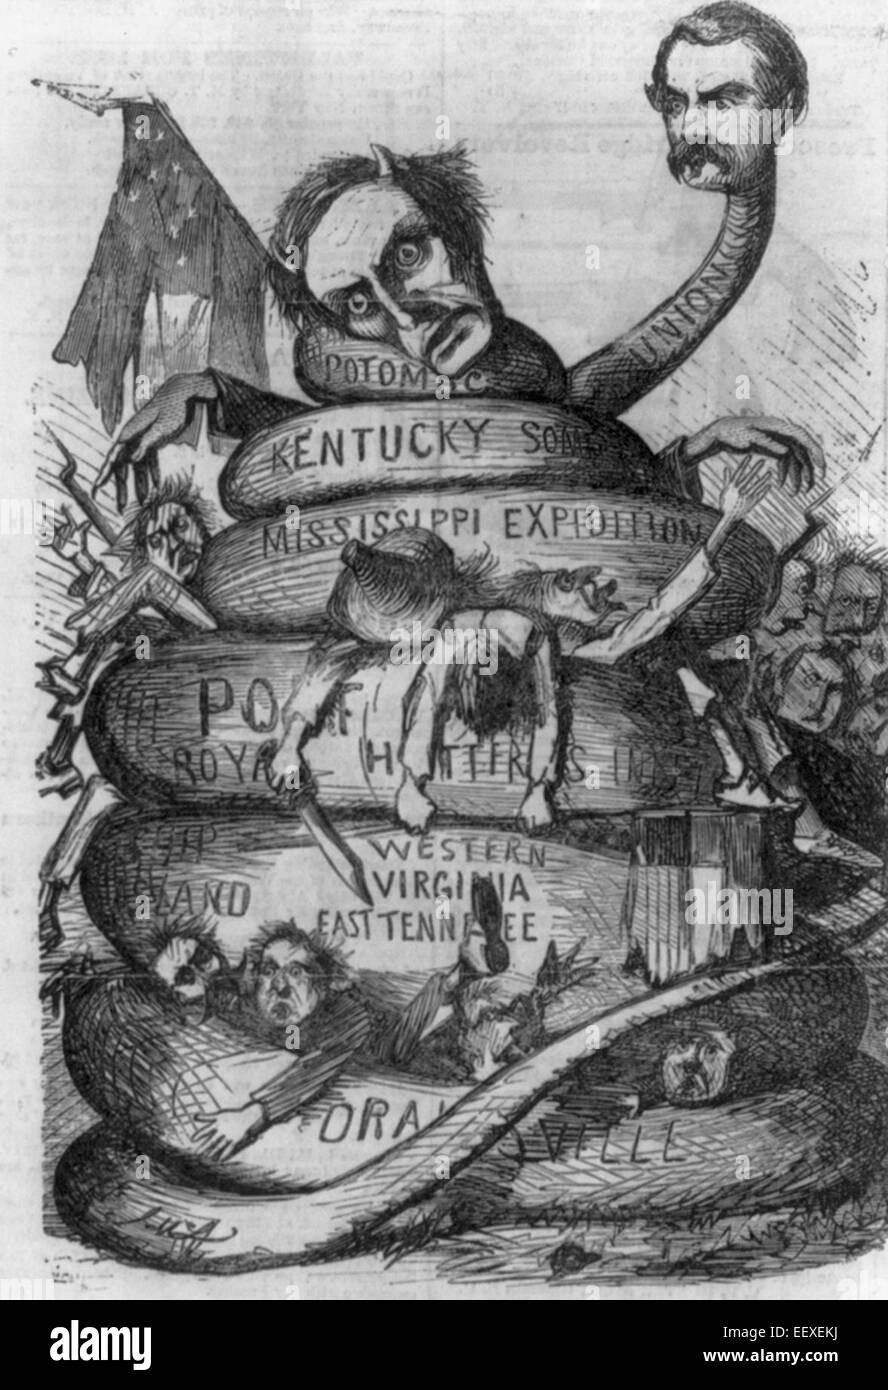 Peu de Mac's Union Européenne Squeeze - caricature général McClellan comme un serpent avec des bobines de constriction autour de confédération, notamment Jeff Davis comme Satan ; USA Guerre civile cartoon, vers 1862 Banque D'Images